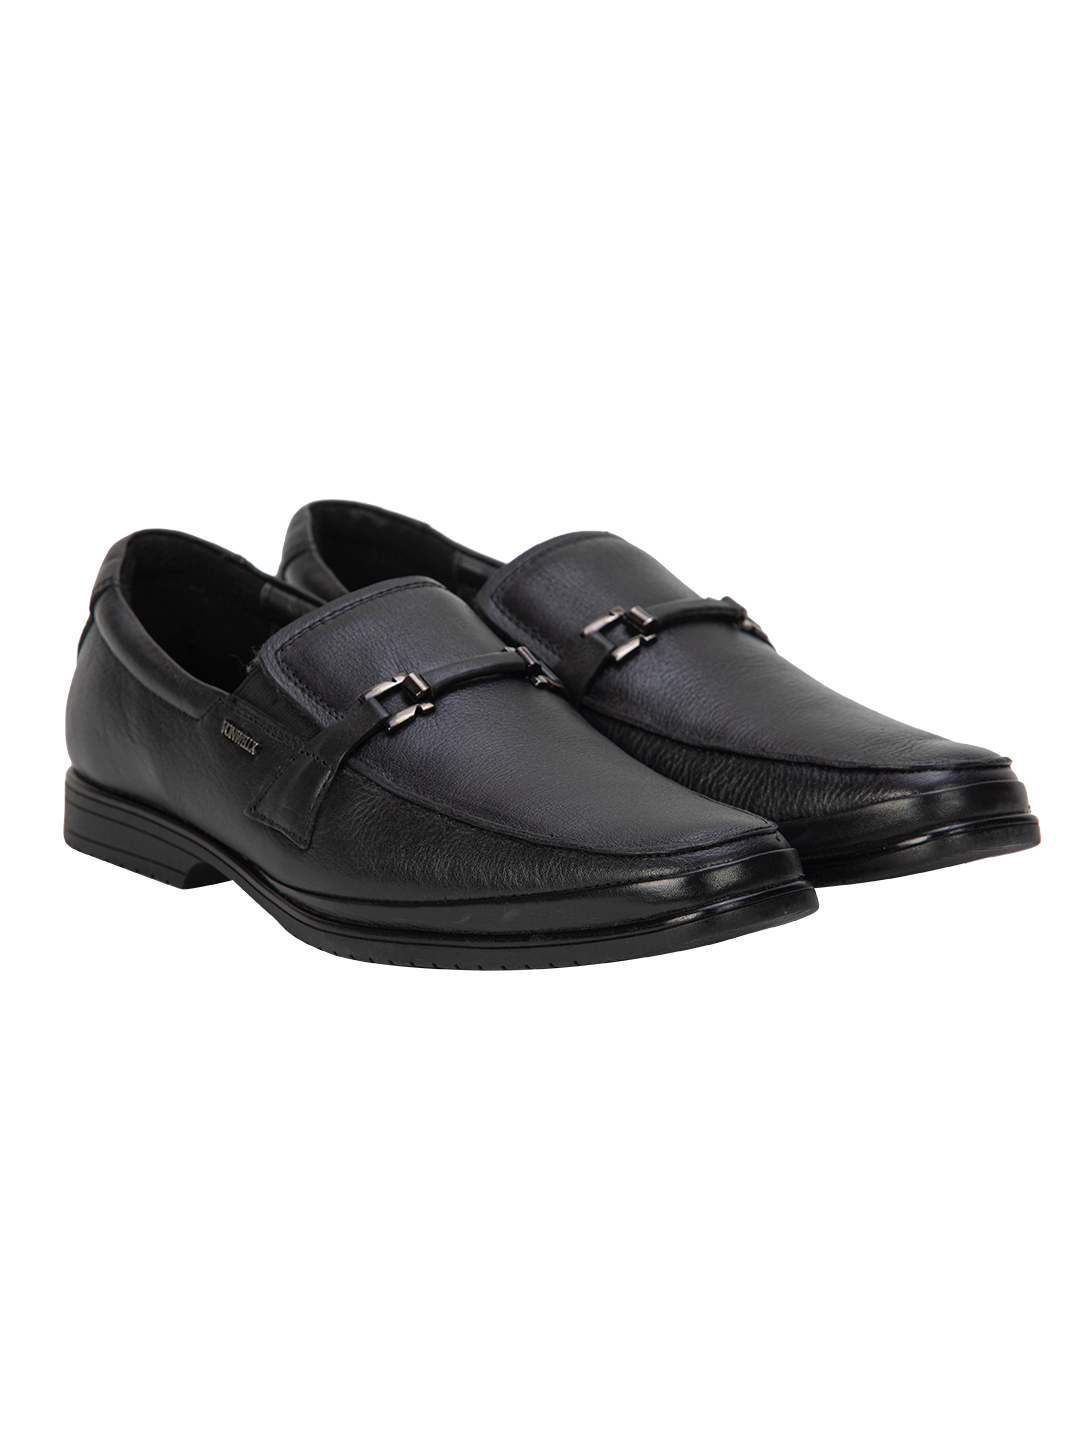 Buy Von Wellx Germany Comfort Black Jace Shoes Online in Tiruchirappalli